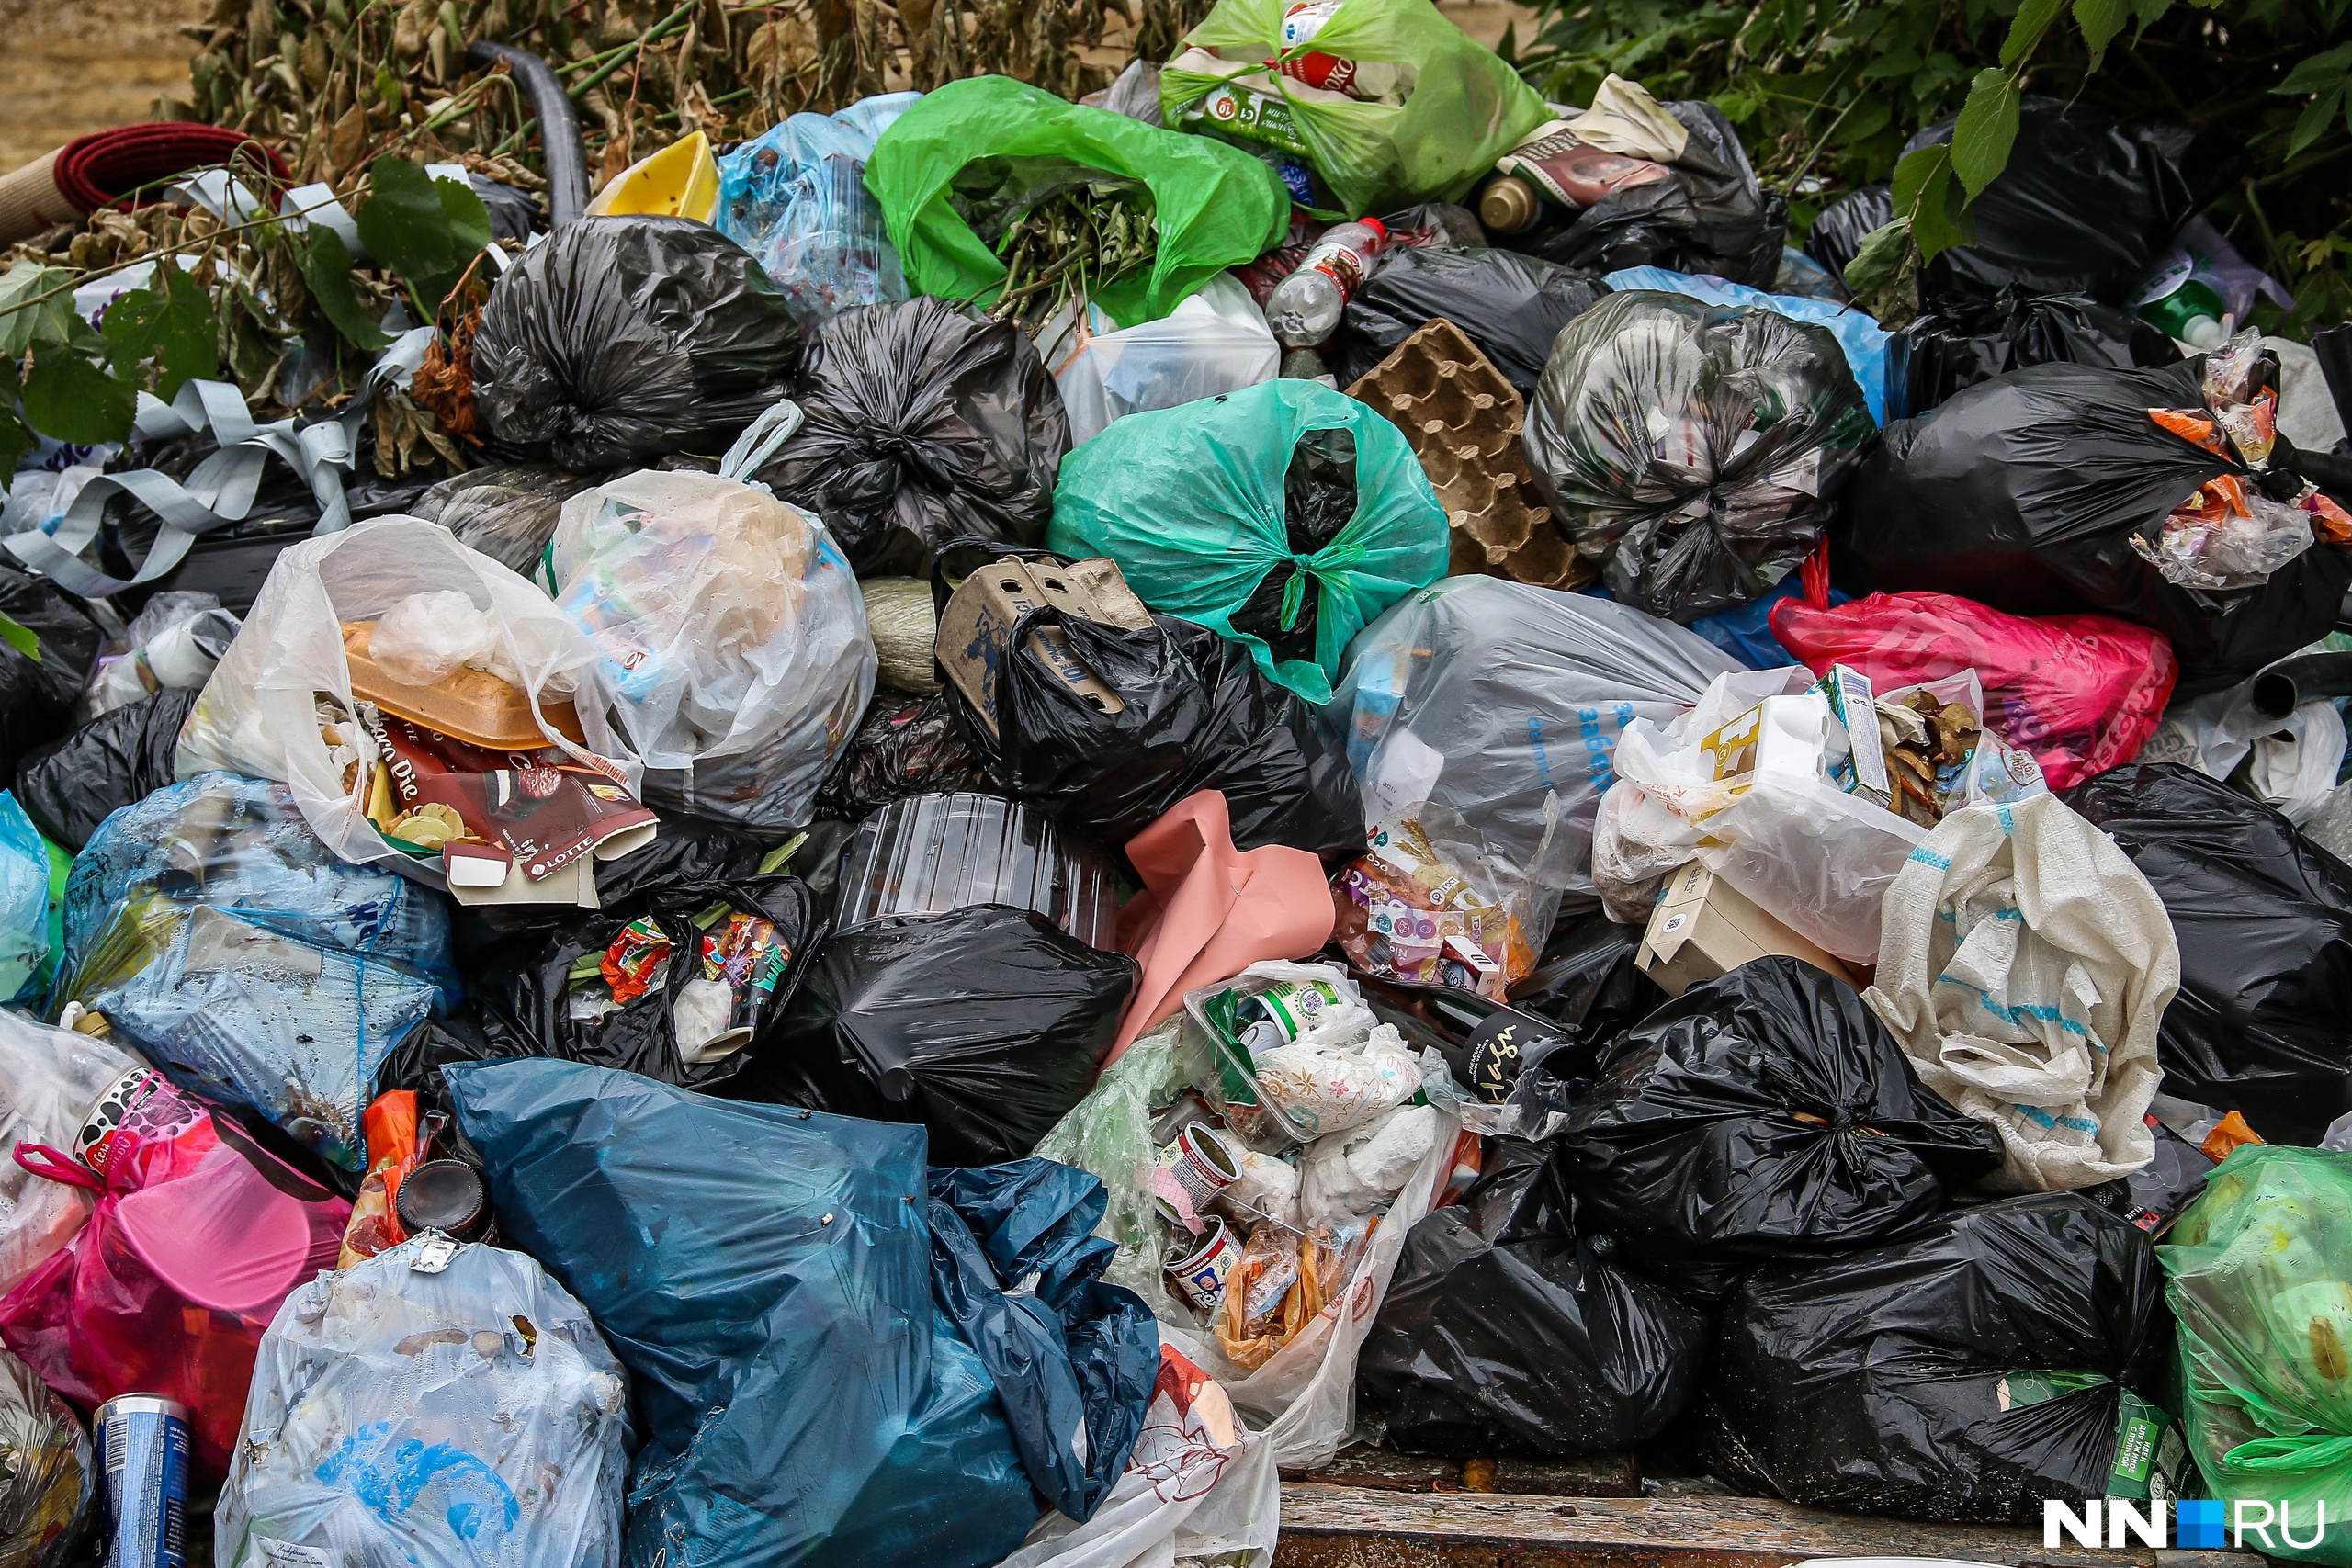 Мэр Заволжья отказал экоактивисту в вывозе мусора с берега Волги, сославшись на «значительные траты»